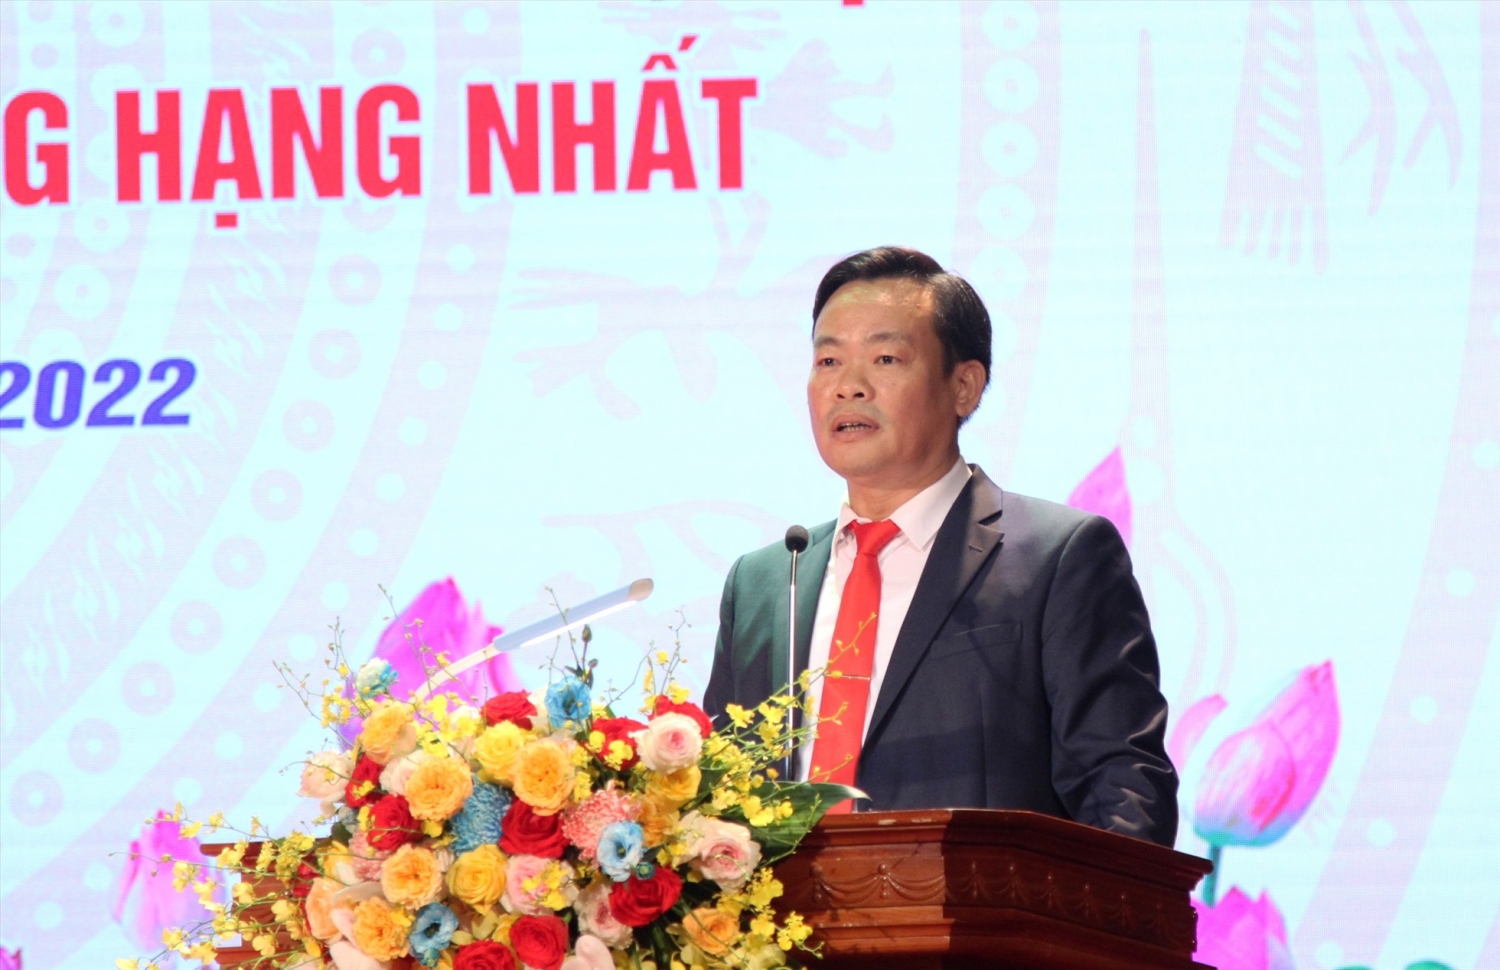 Hà Nội: Quận Cầu Giấy đón nhận Huân chương Lao động hạng Nhất